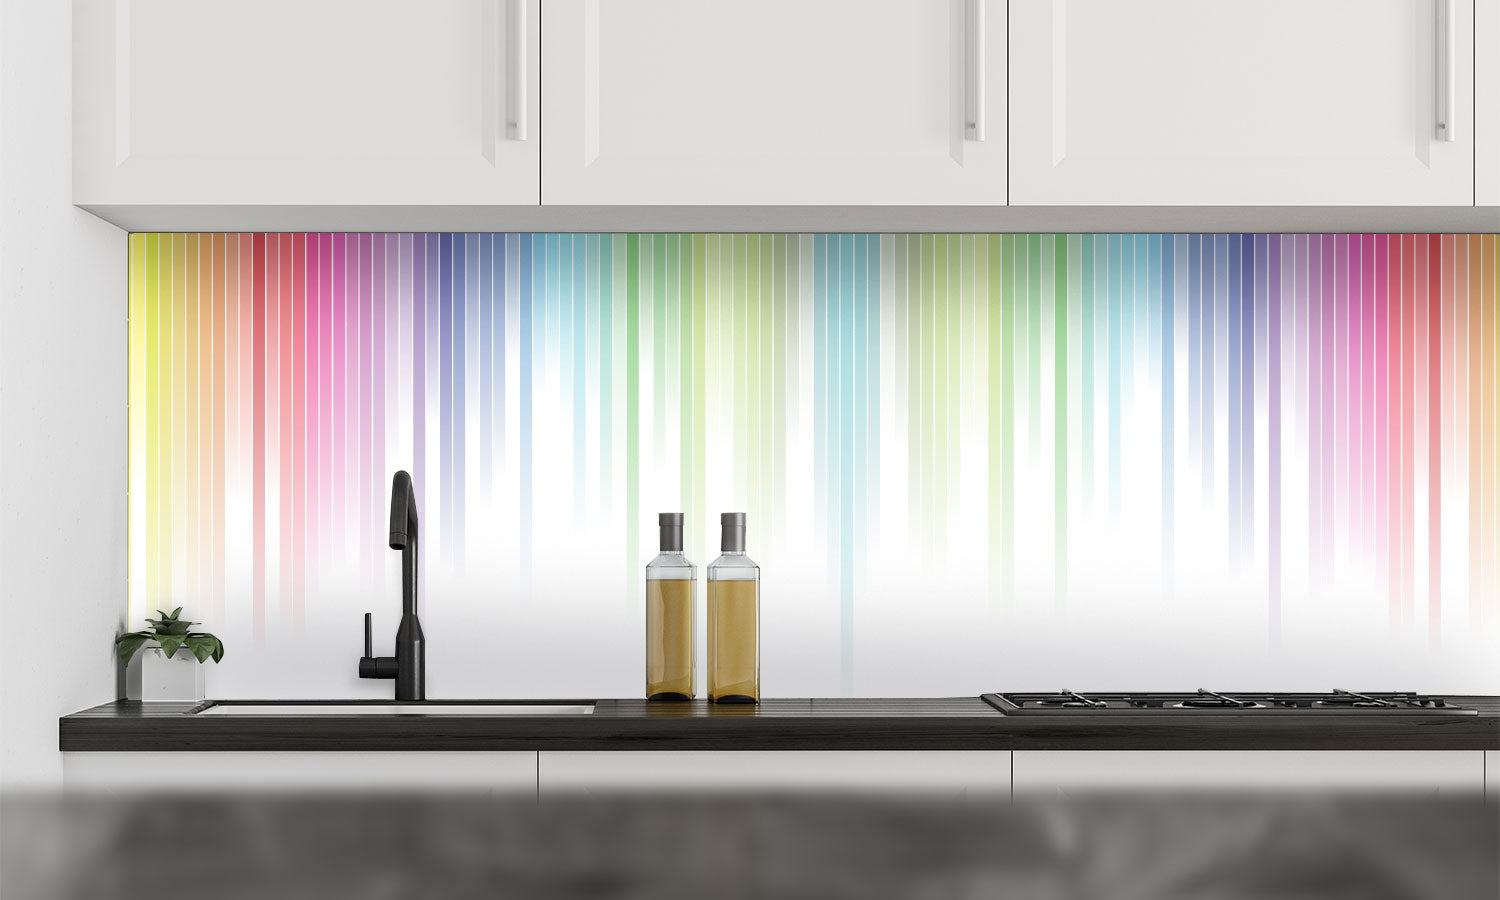 Kuhinjski paneli Colorful background - Stekleni / PVC plošče / Pleksi steklo - s tiskom za kuhinjo, Stenske obloge PKU0148 - Life-decor.si